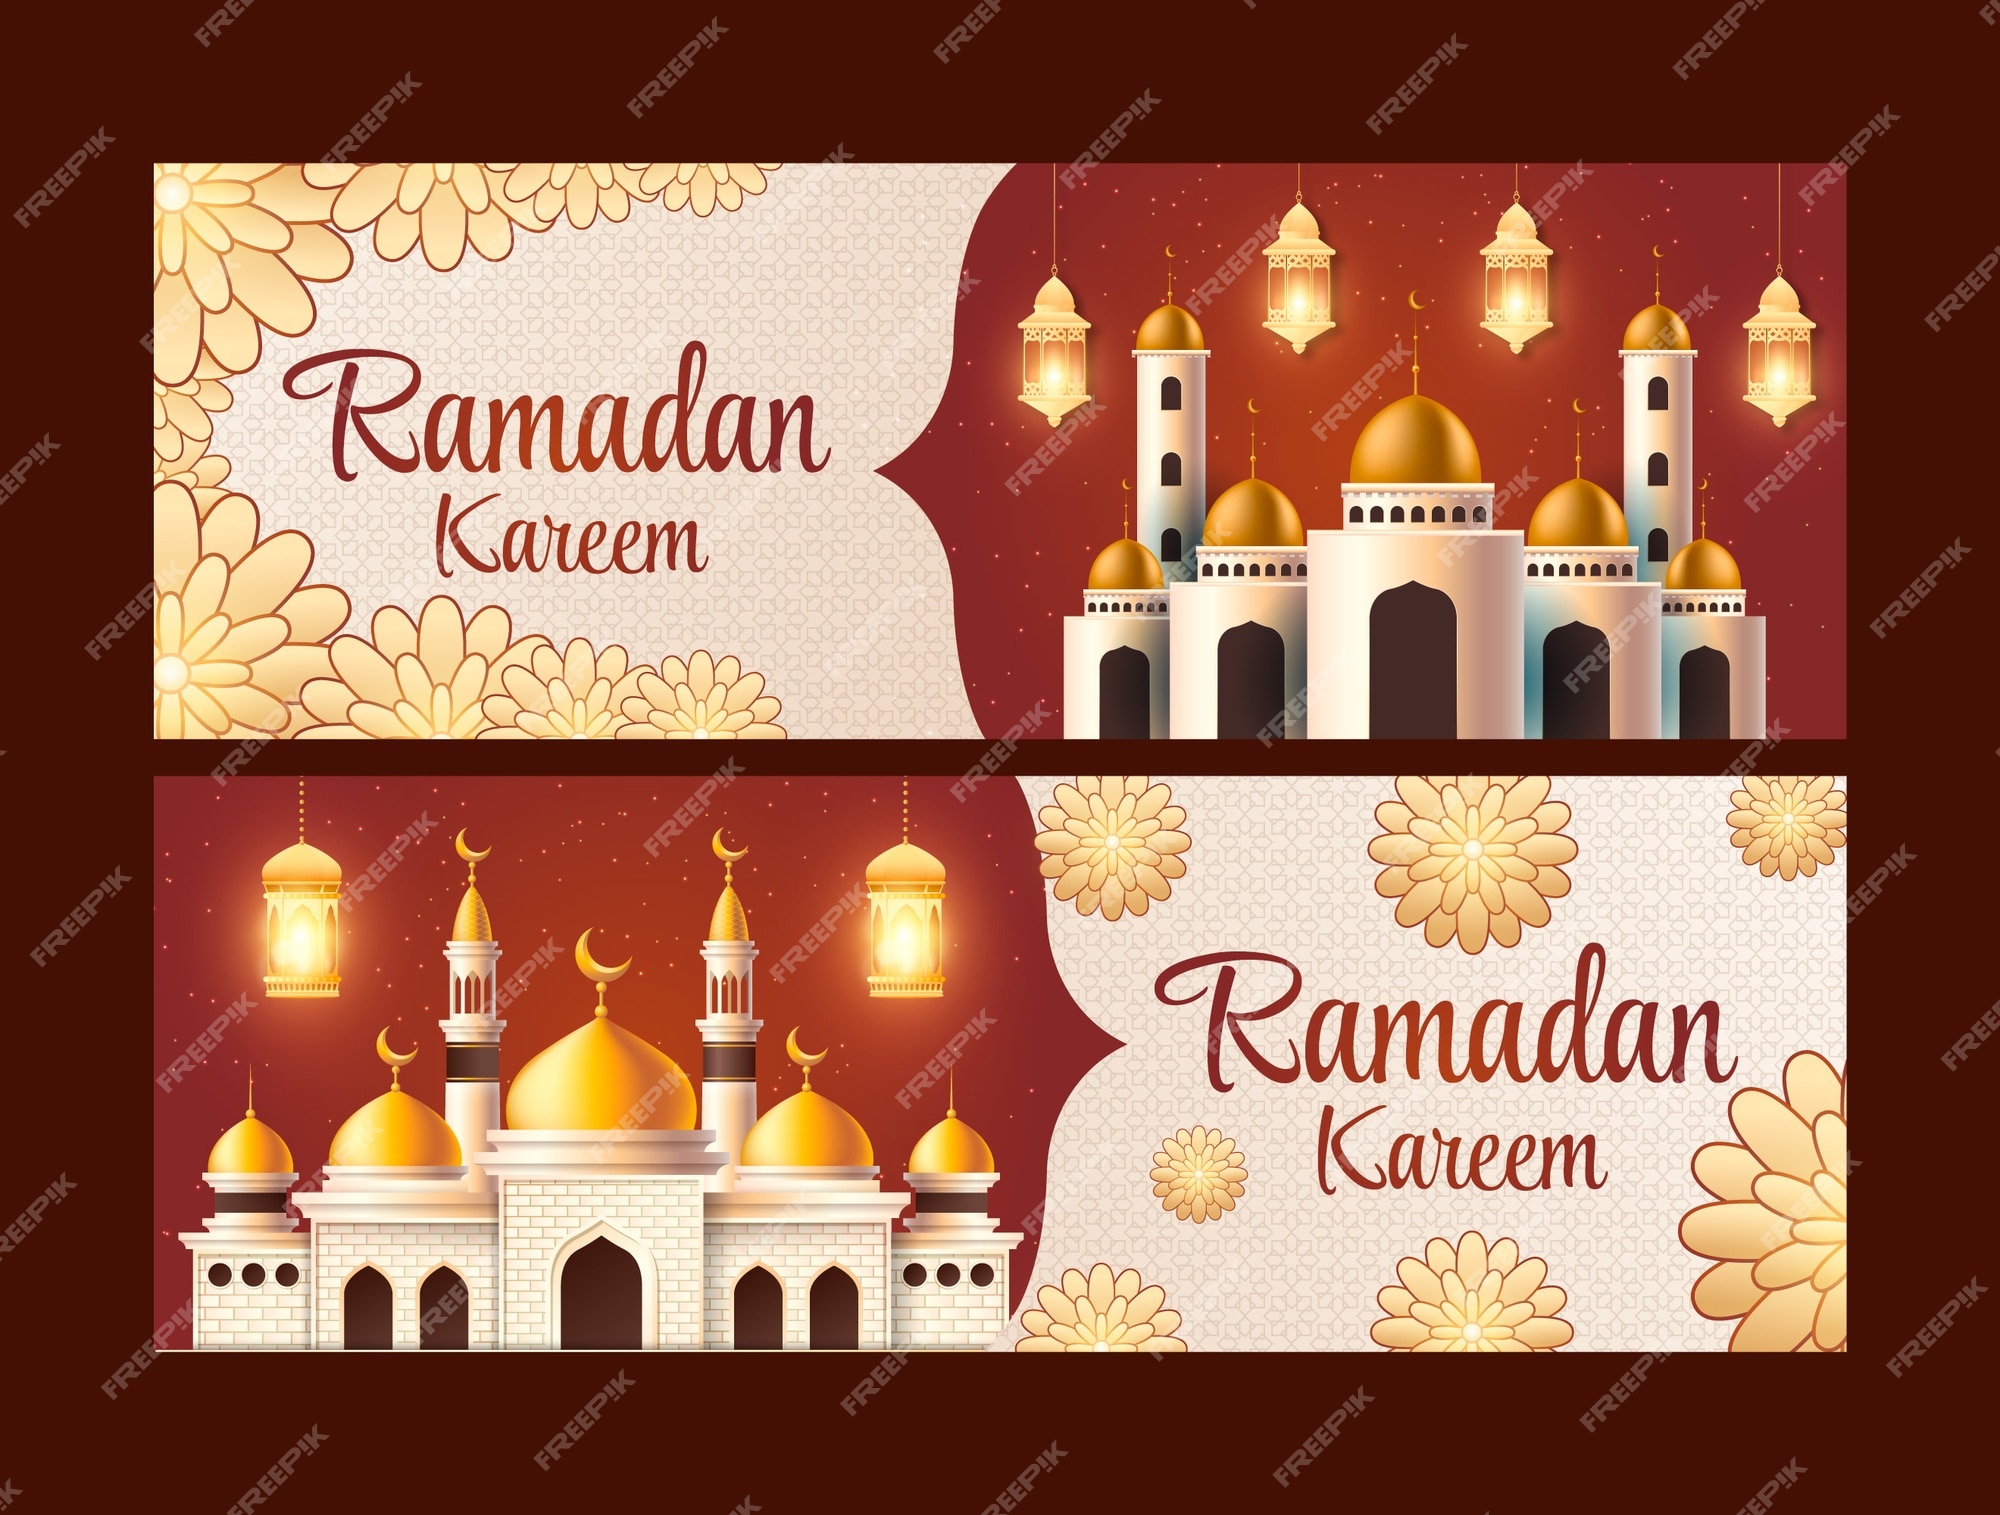 Mẫu banner ngang Ramadan chân thực sẽ khiến cho trang web hay cửa hàng của bạn trở nên đẹp mắt và thu hút. Với màu sắc và hình ảnh đầy sáng tạo, banner của bạn sẽ trở thành một khía cạnh không thể thiếu trong việc trang trí cho tháng Ramadan đặc biệt.